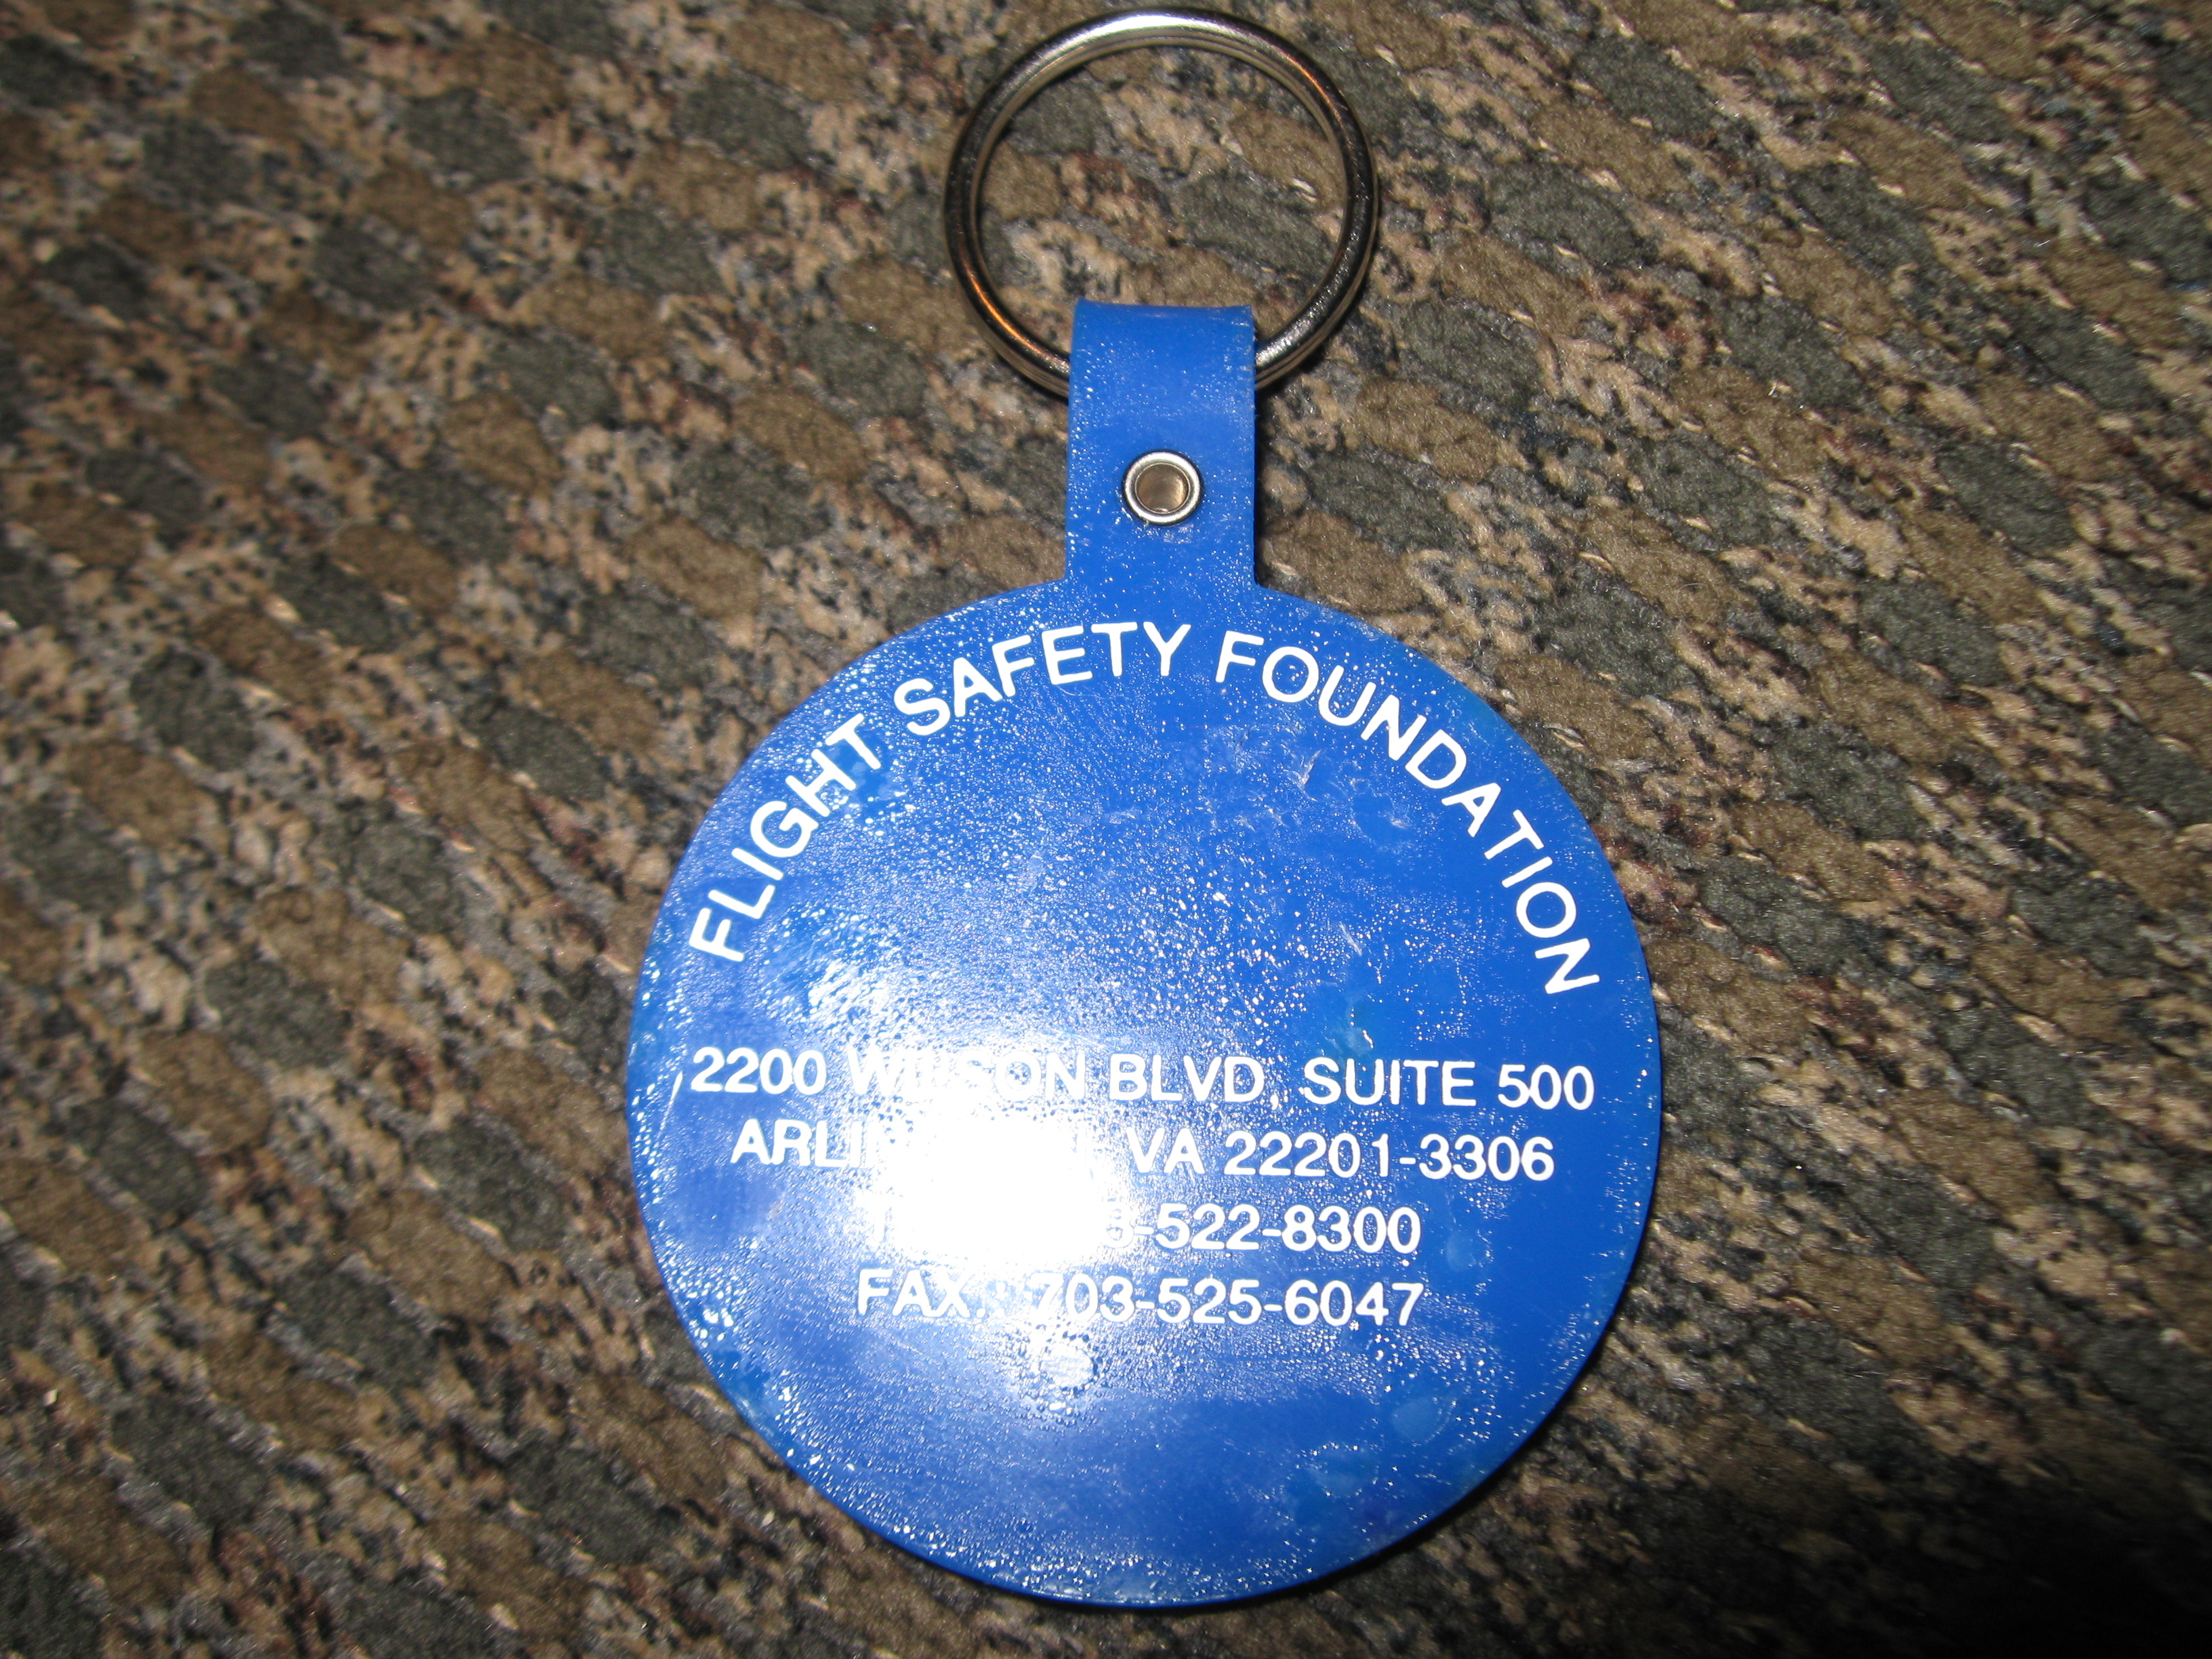 Flight safety Foundation key chain